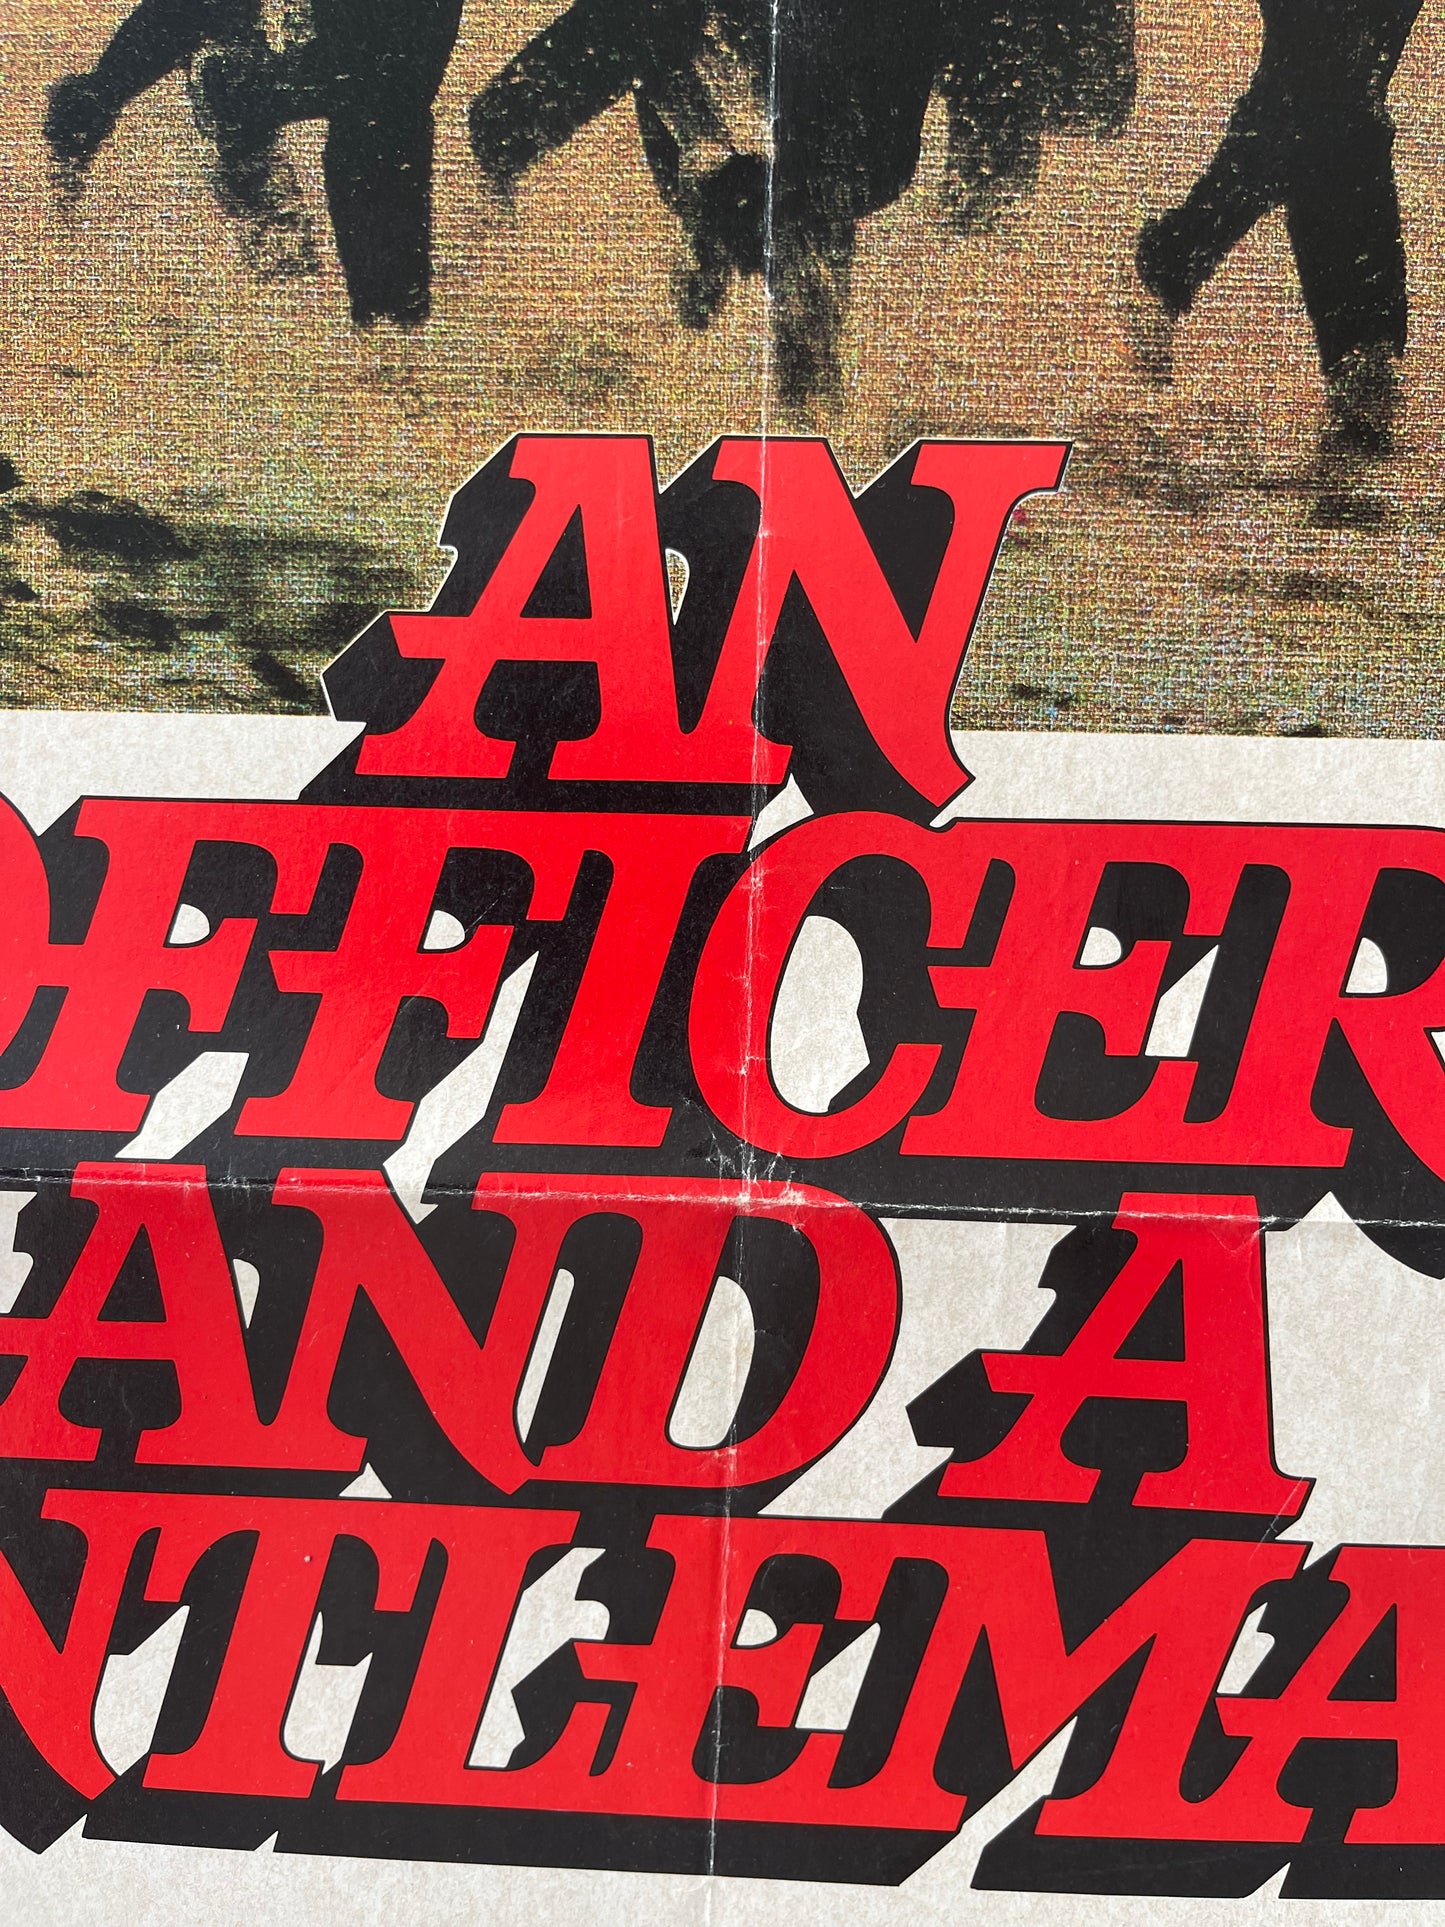 An Officer And A Gentleman (1982) - One Sheet